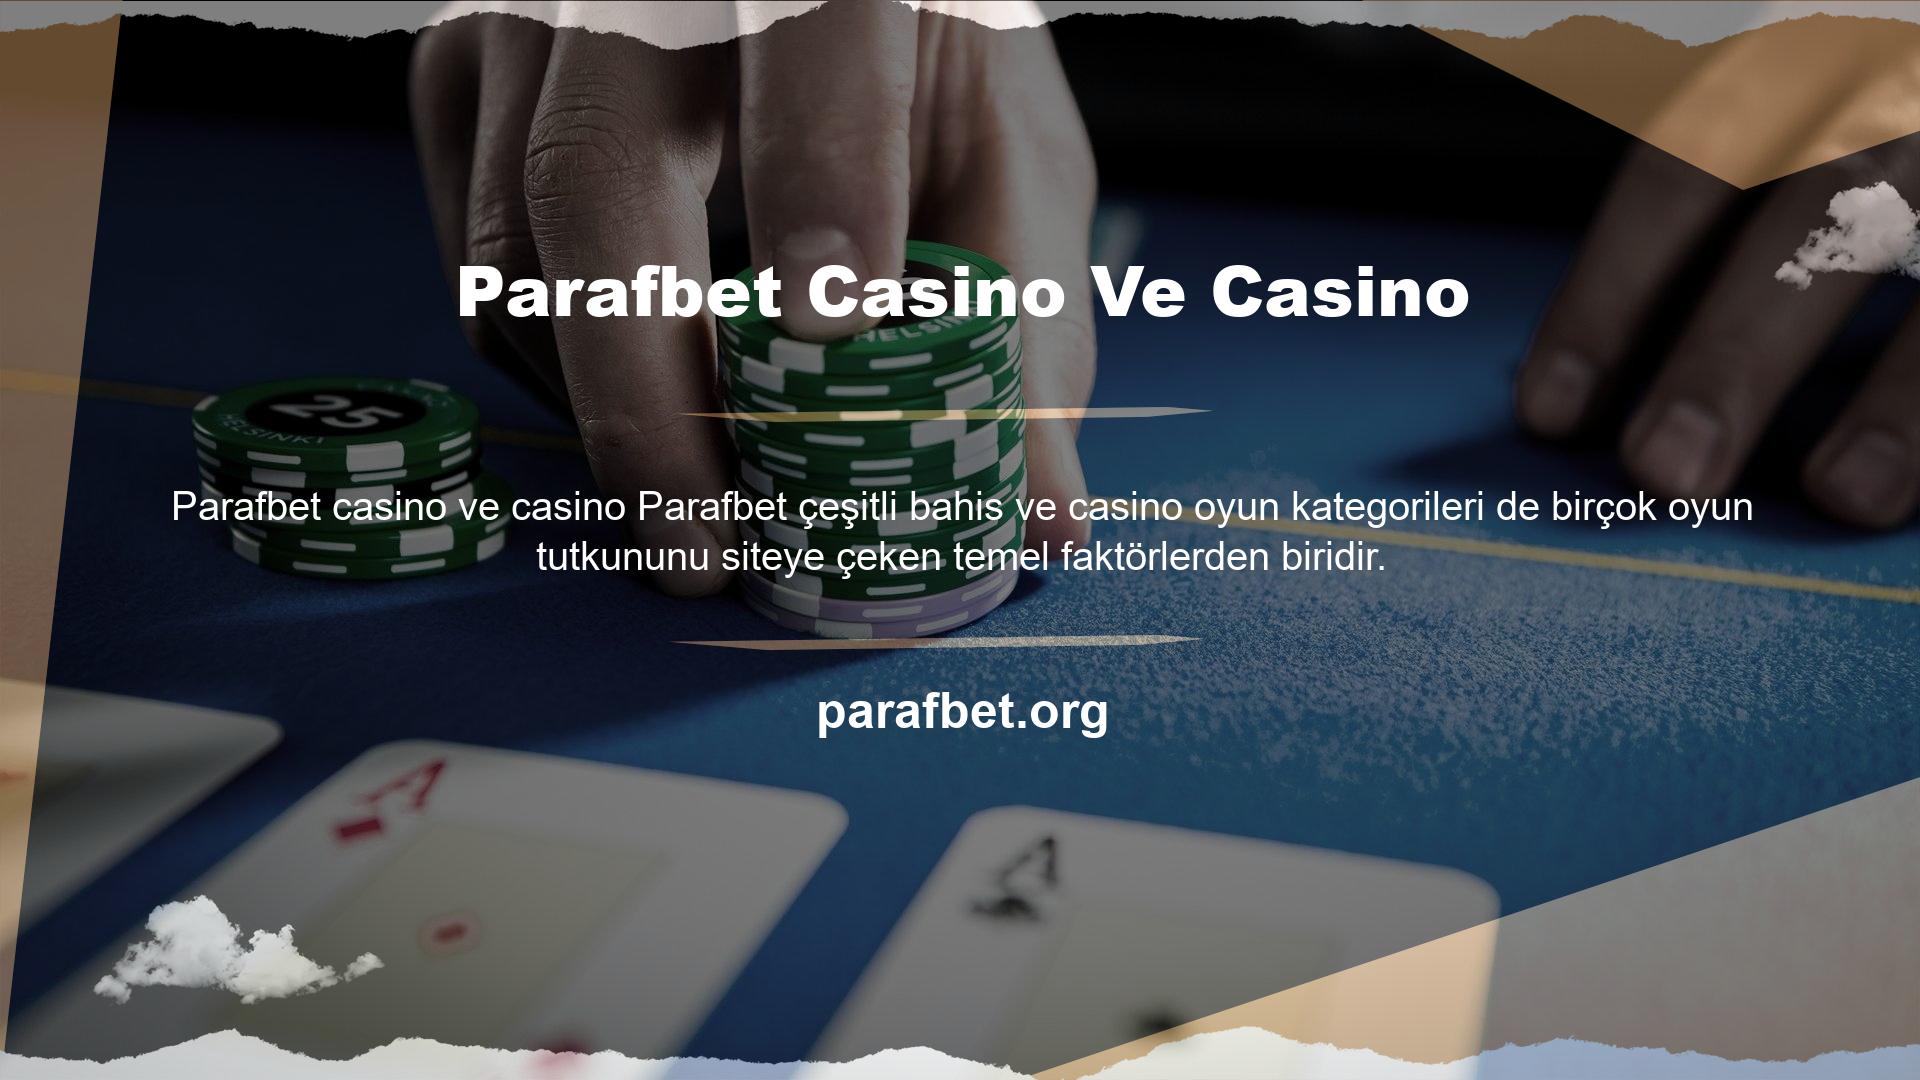 Parafbet sitesine giriş yaptığınızda eğlenceli ve kazançlı casino ve bahis oyunlarının keyfini çıkarabilirsiniz